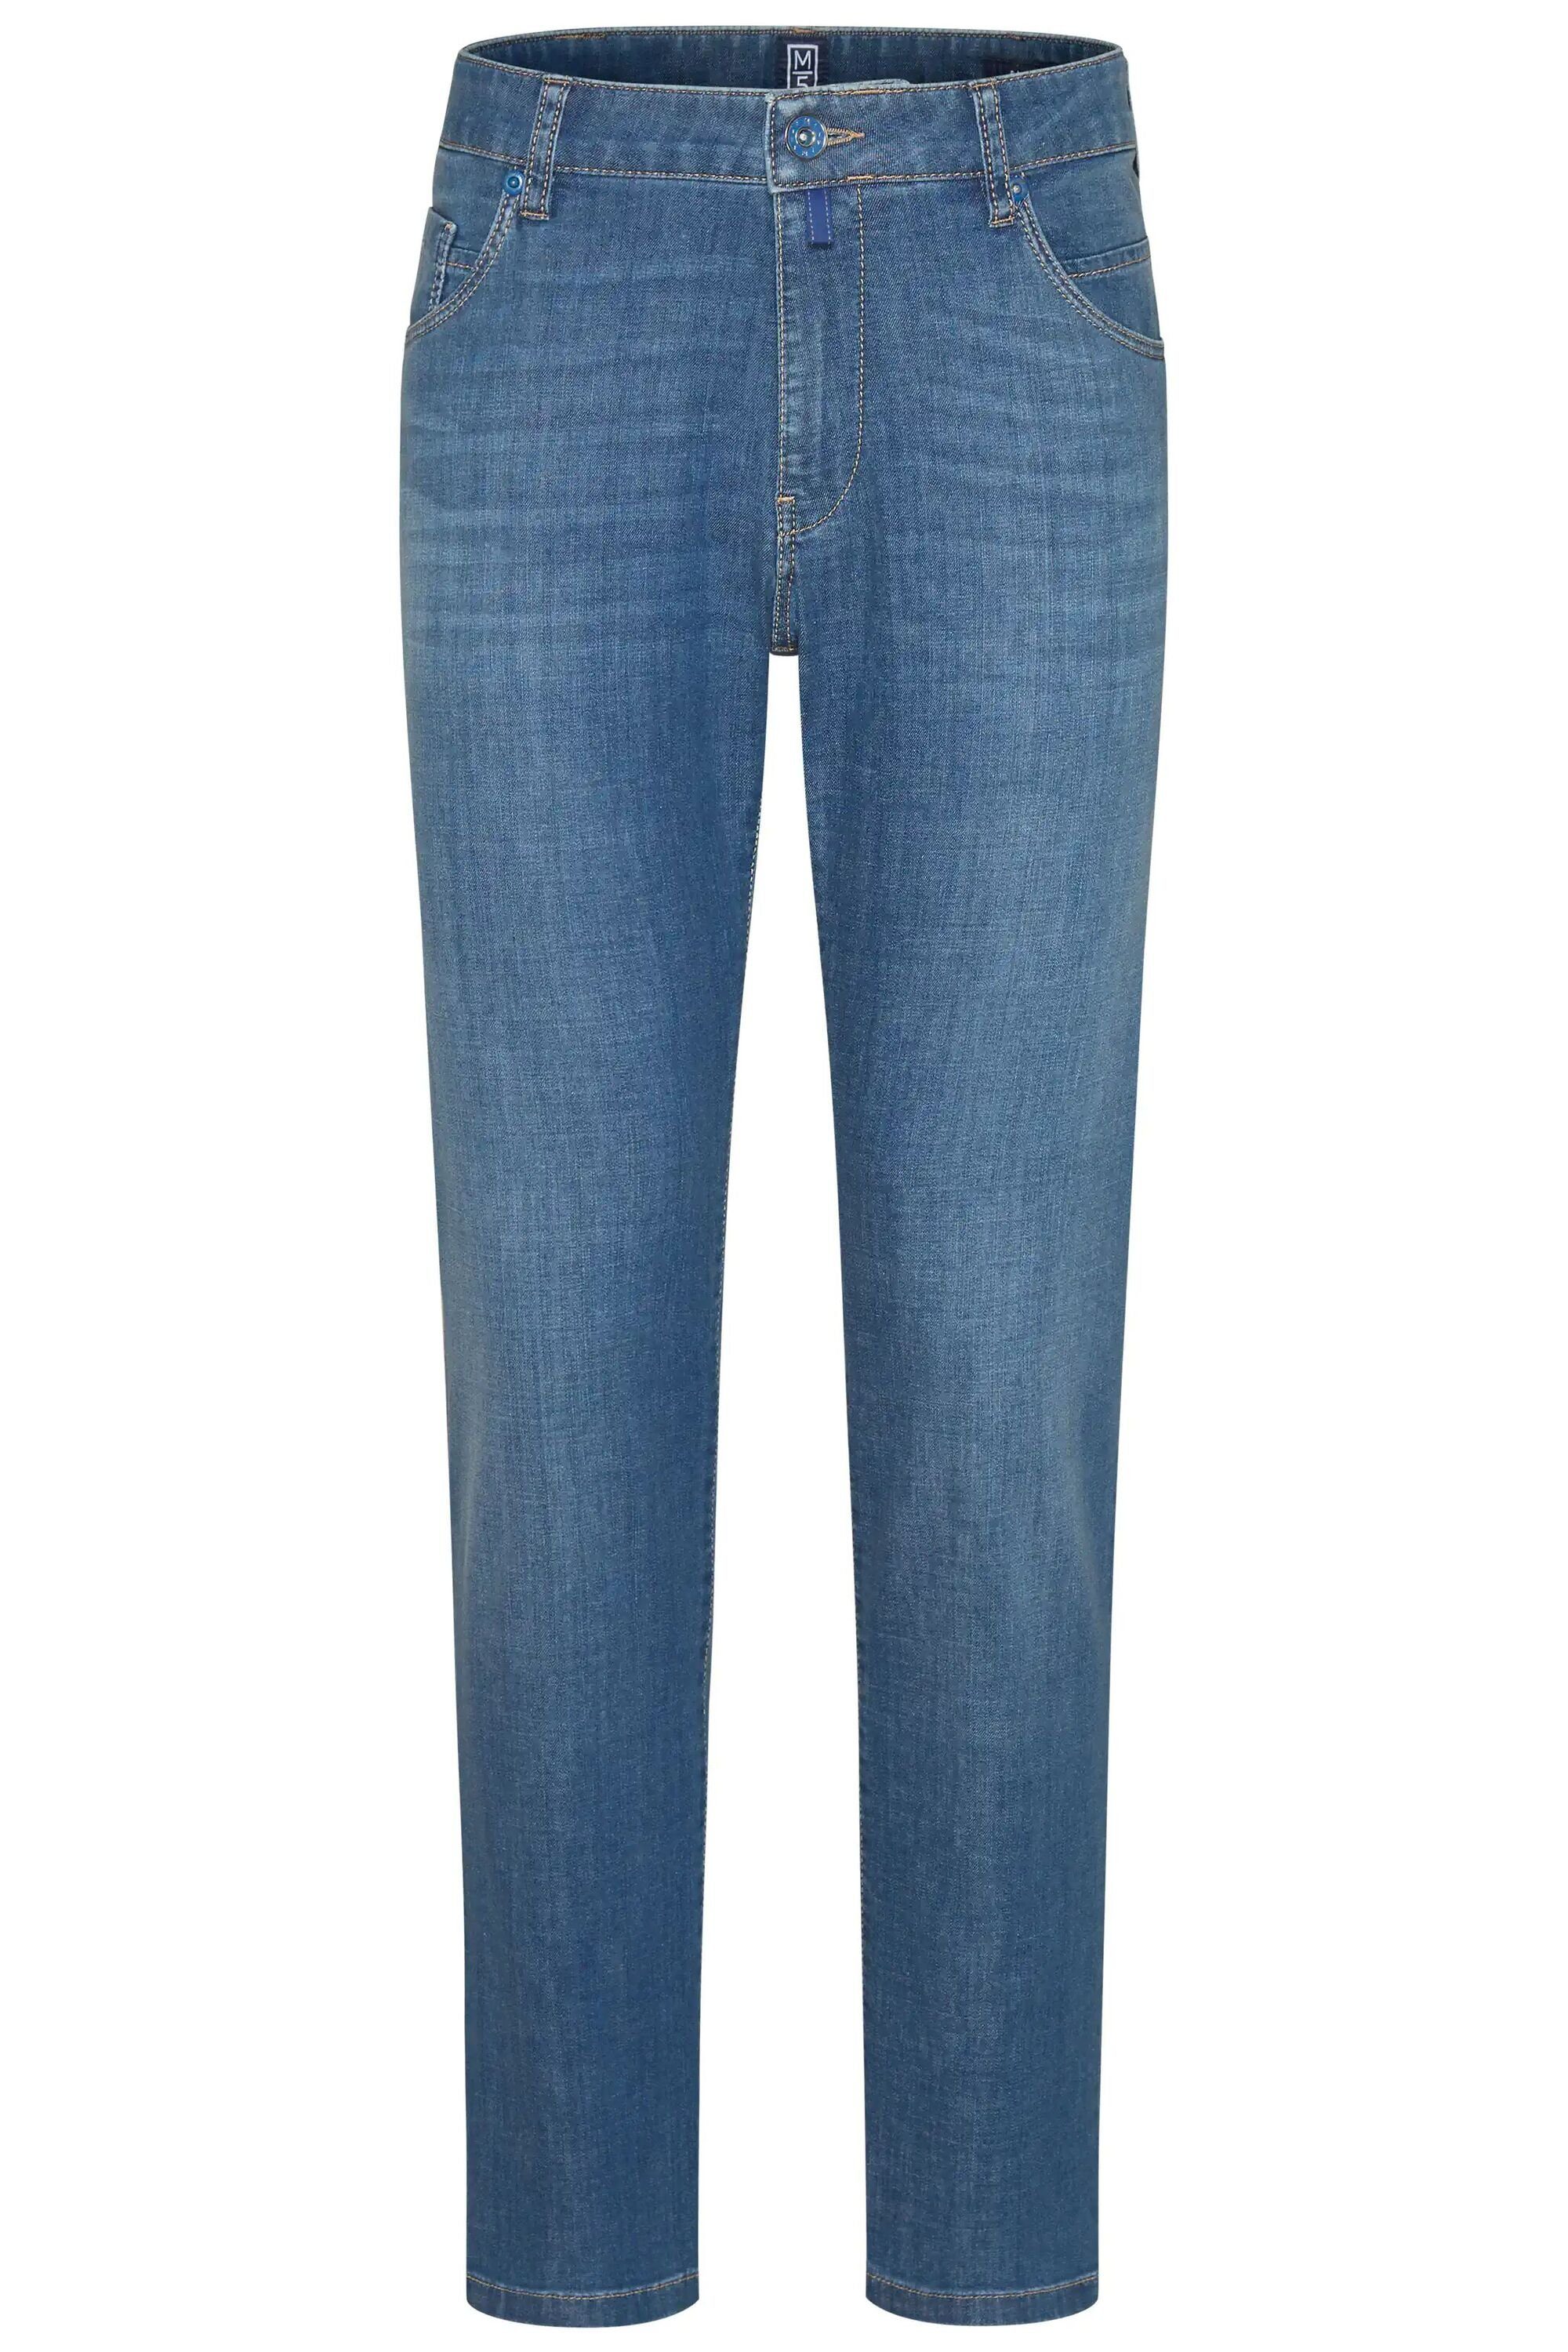 5-Pocket-Jeans MEYER blau Super-Stretch